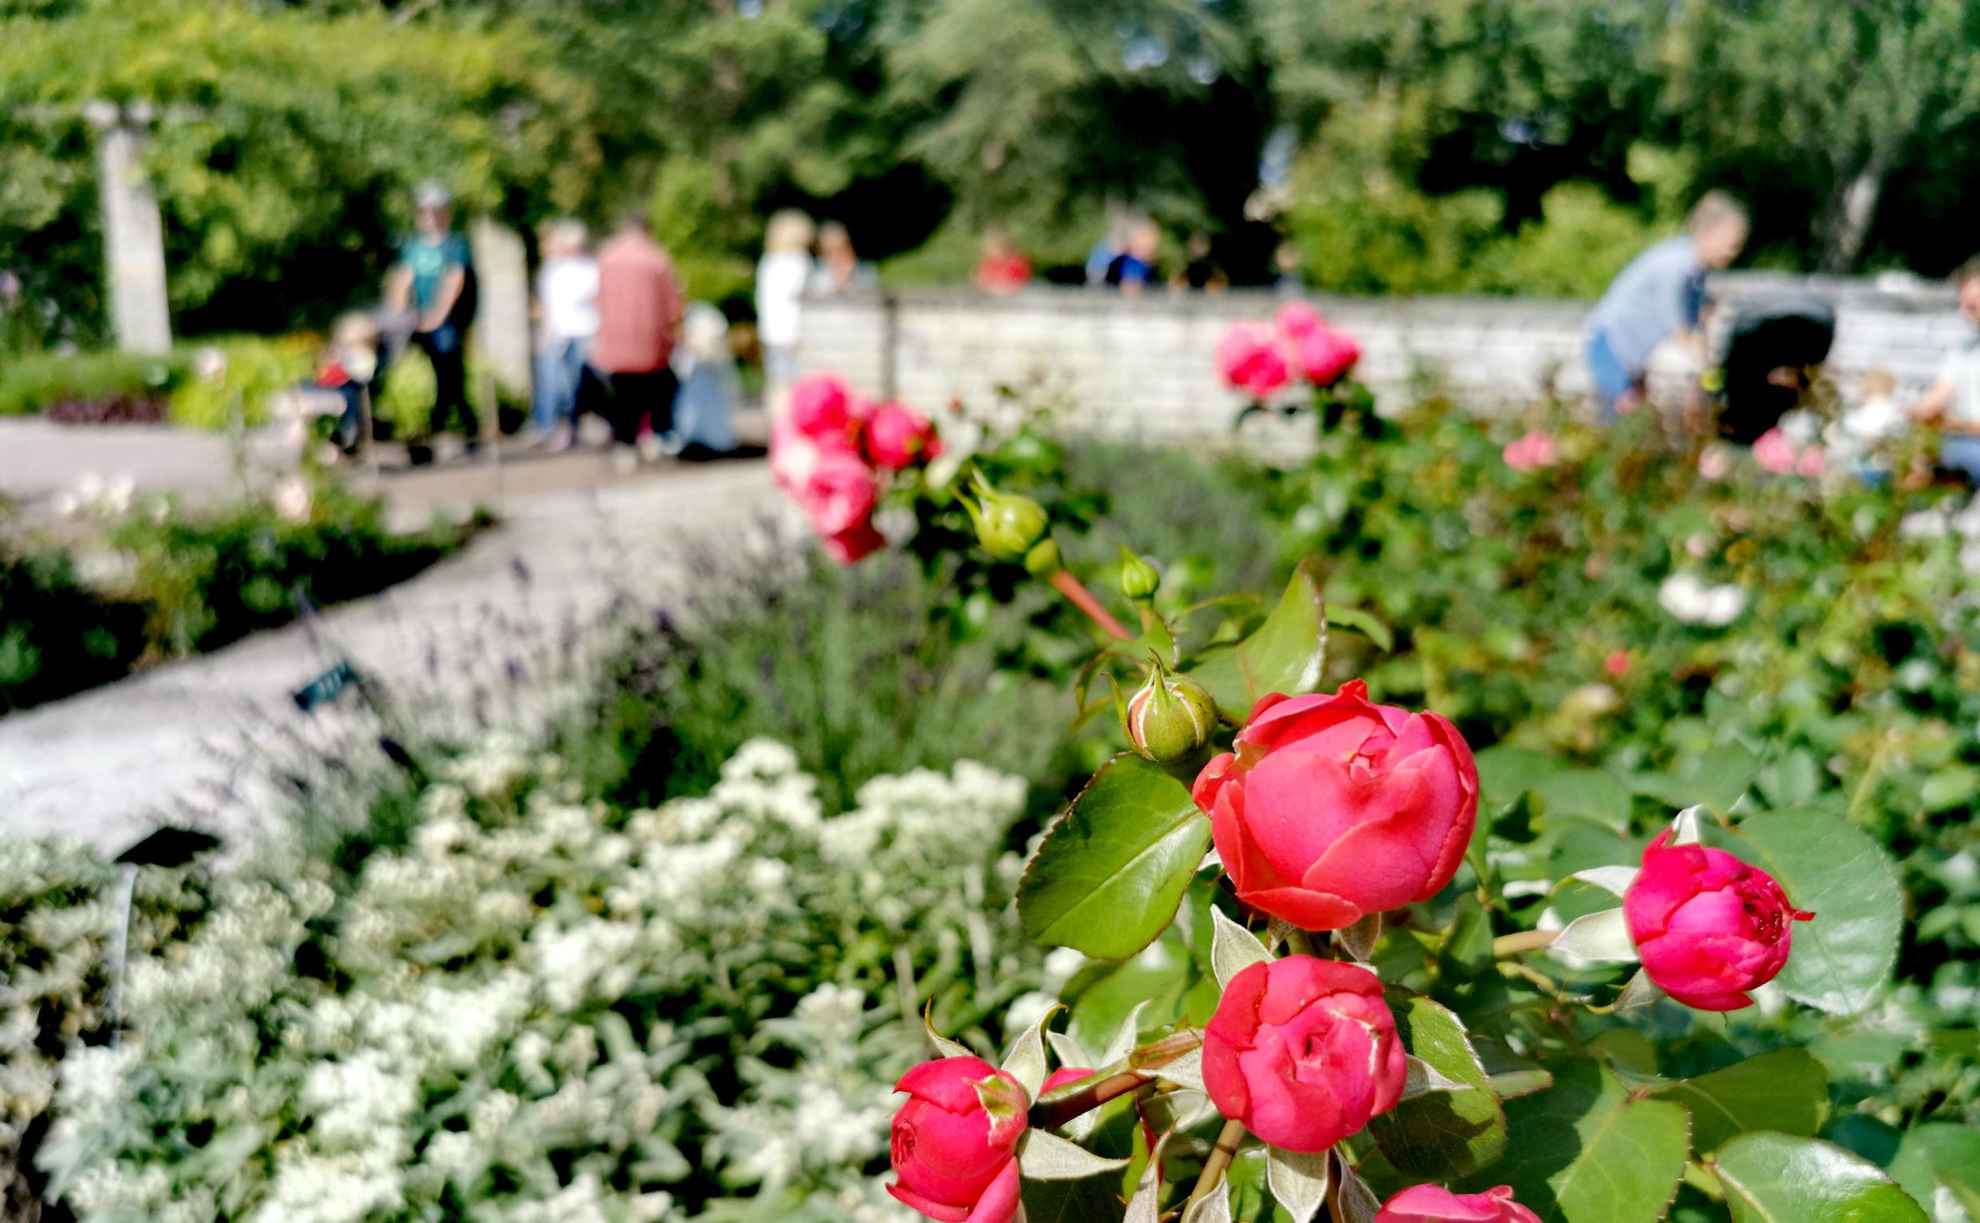 Un parterre de roses dans un jardin botanique. En arrière-plan, le long d'un sentier pédestre, se trouvent de la verdure et plusieurs personnes floues.